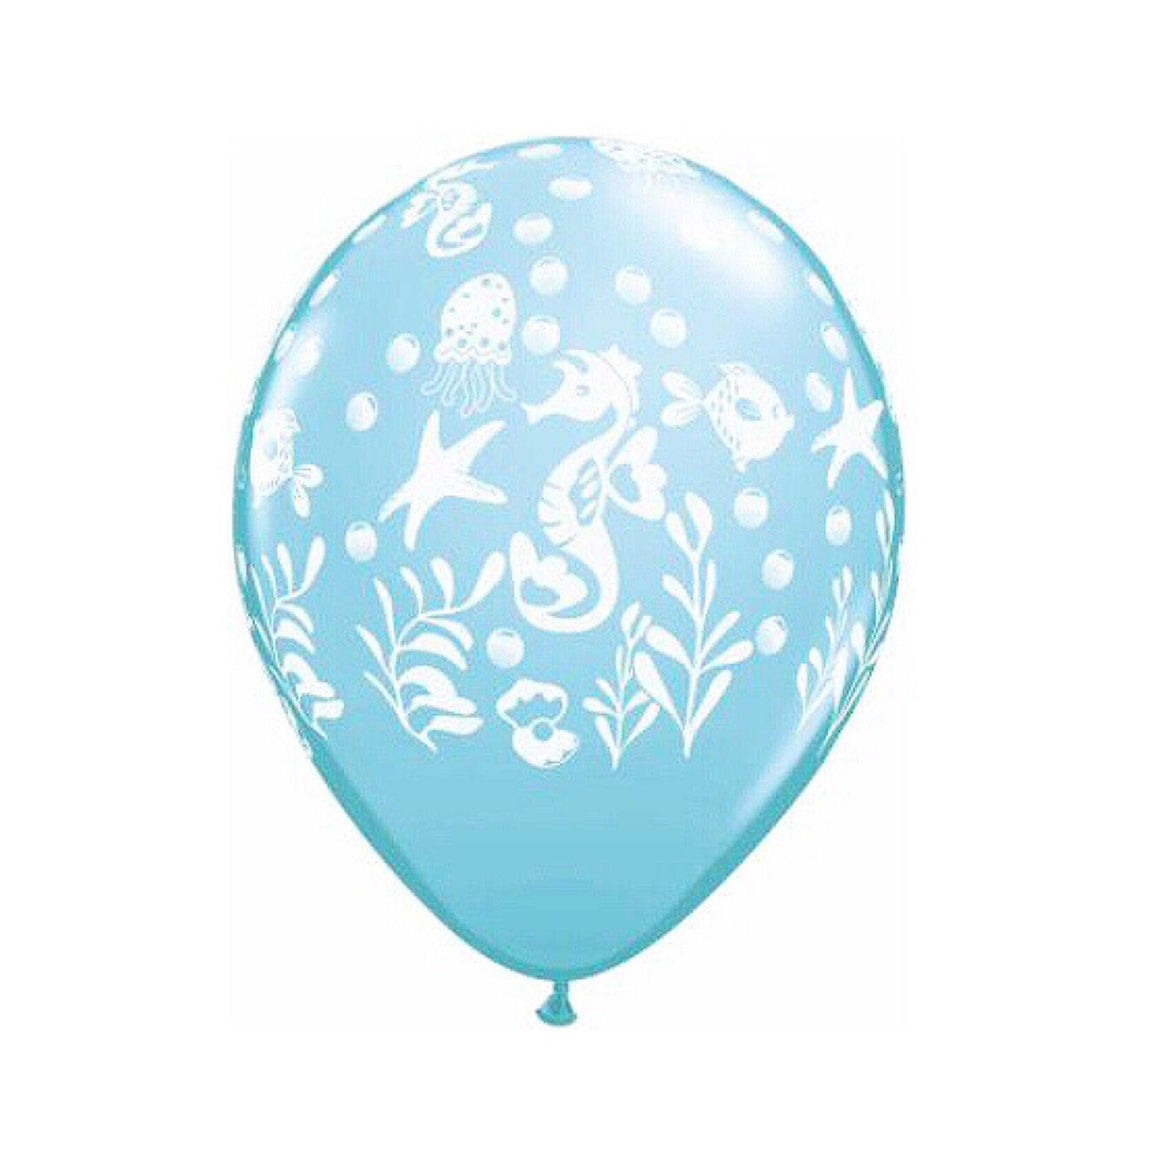 BALLOON BAR - SEA LIFE UNDER THE SEA 11", Balloons, QUALATEX - Bon + Co. Party Studio